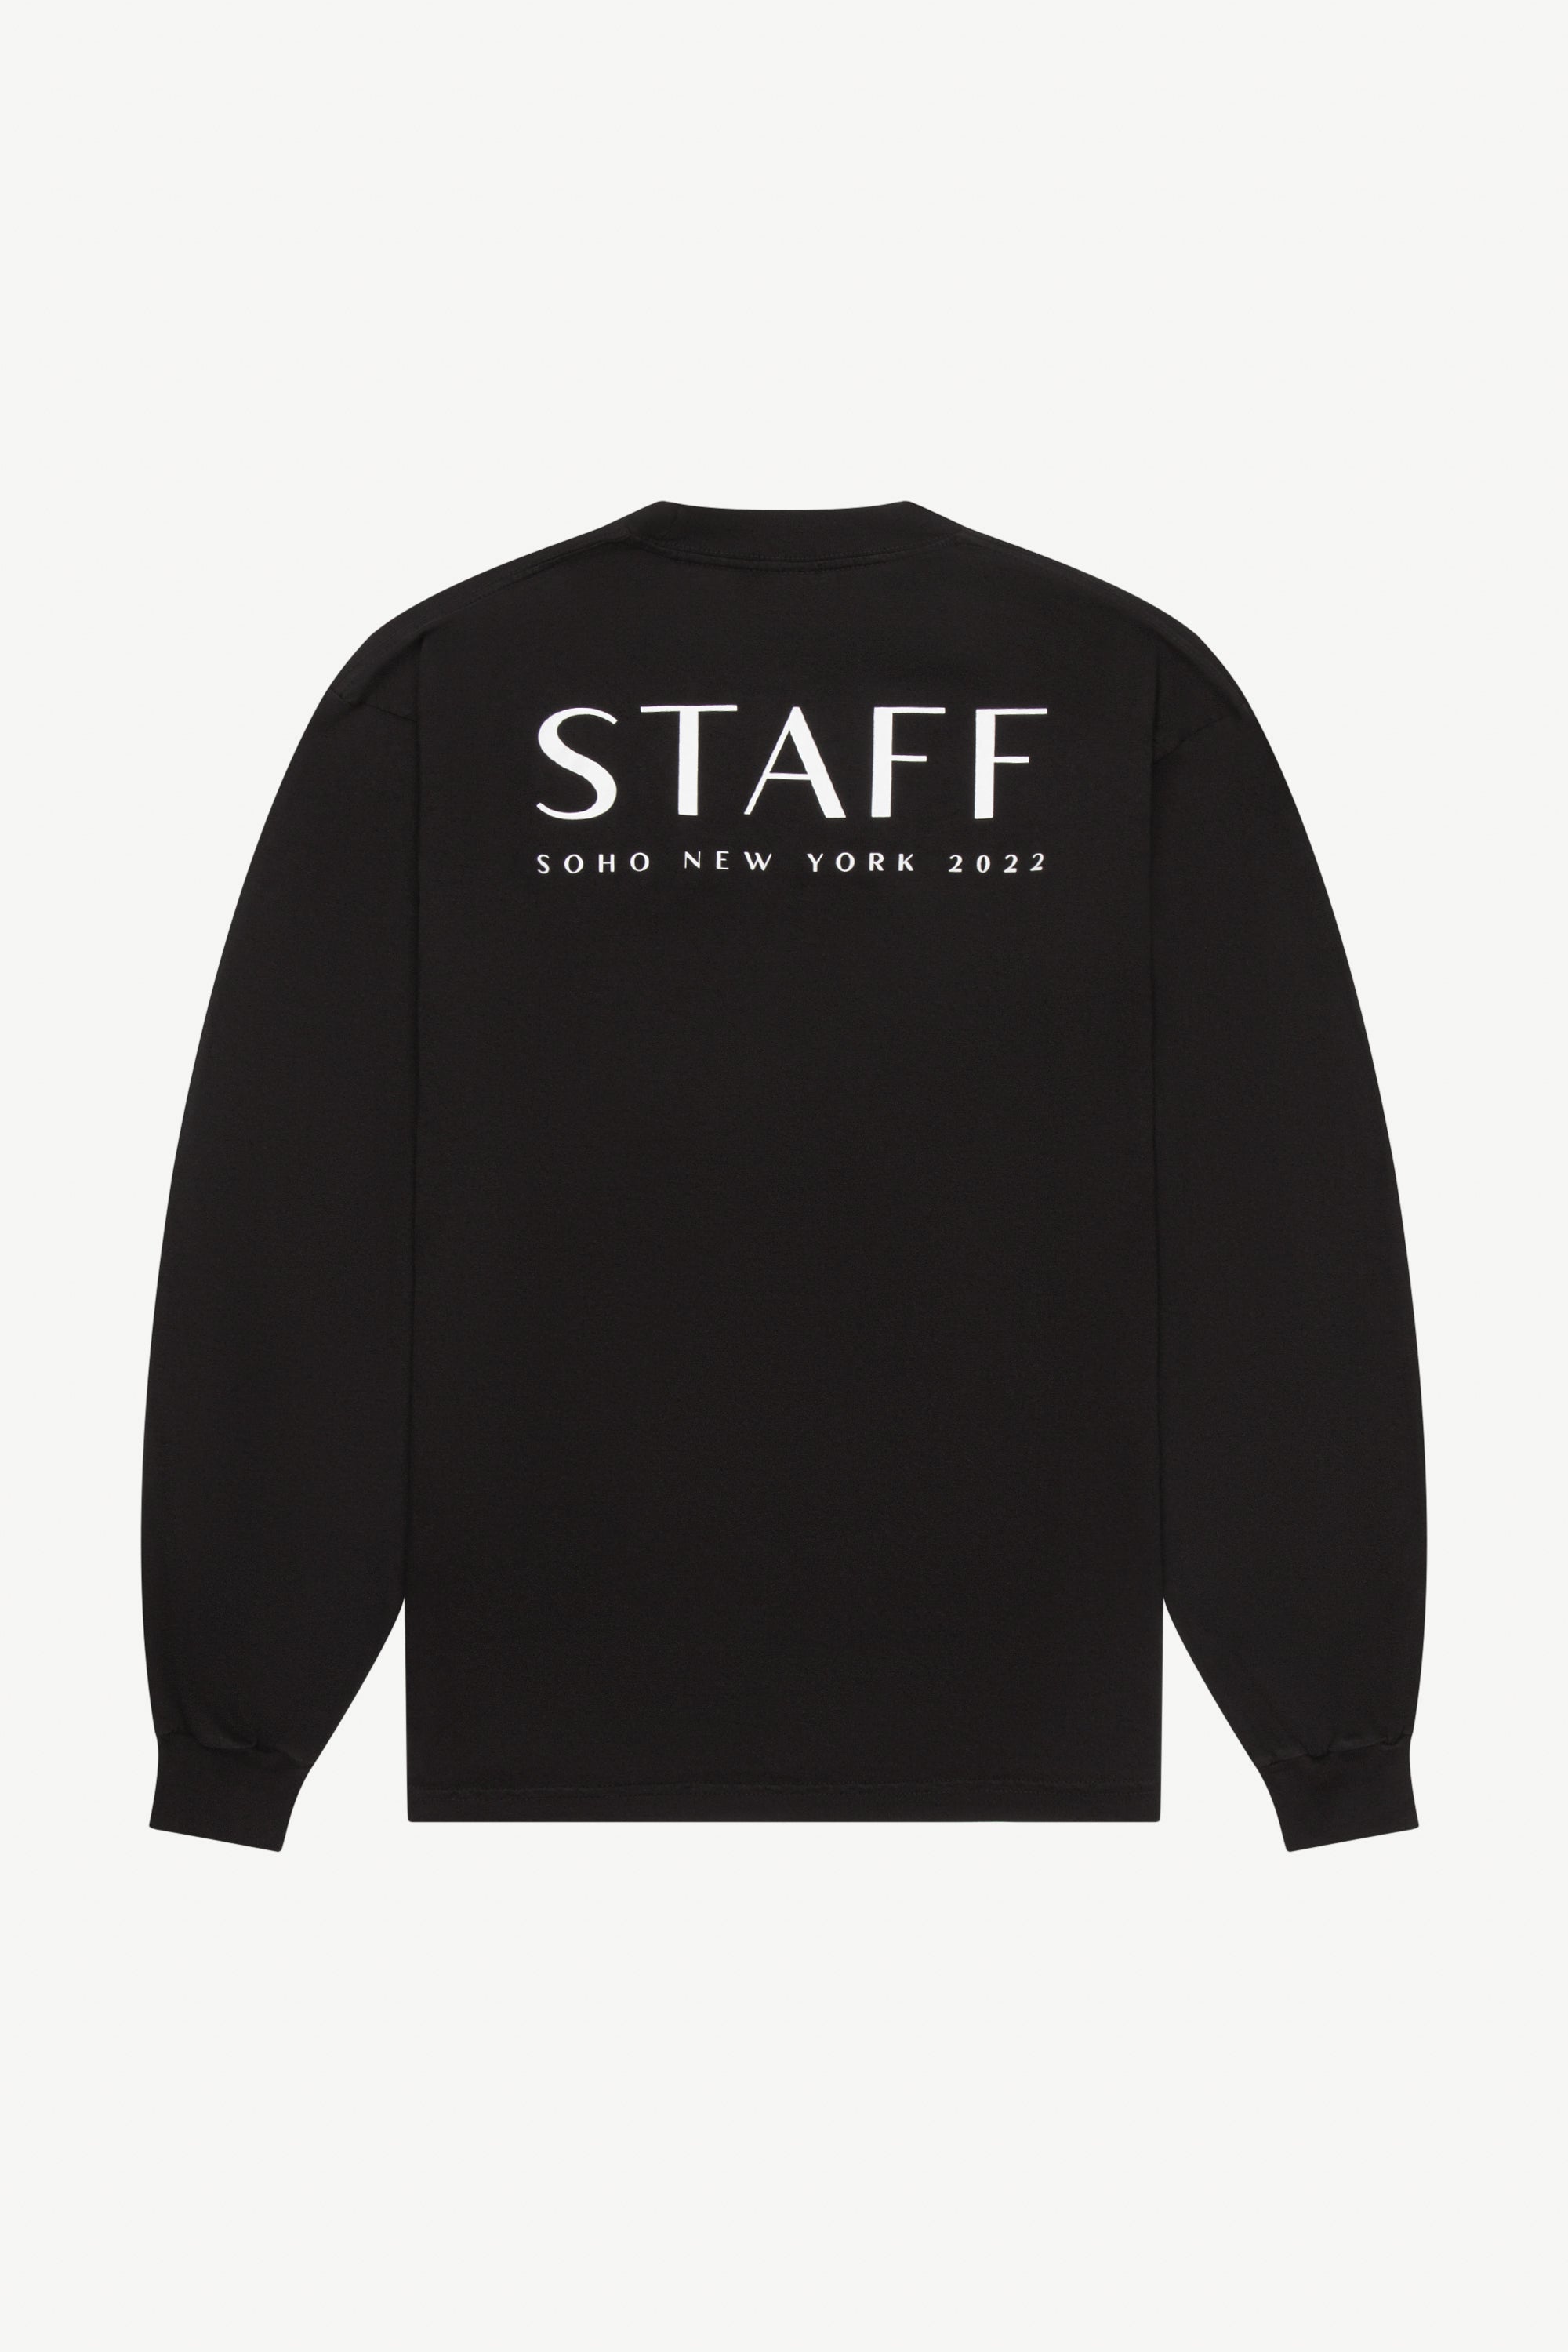 epschoolboard Merch Long Sleeve T Shirt - Staff Black epschoolboard 